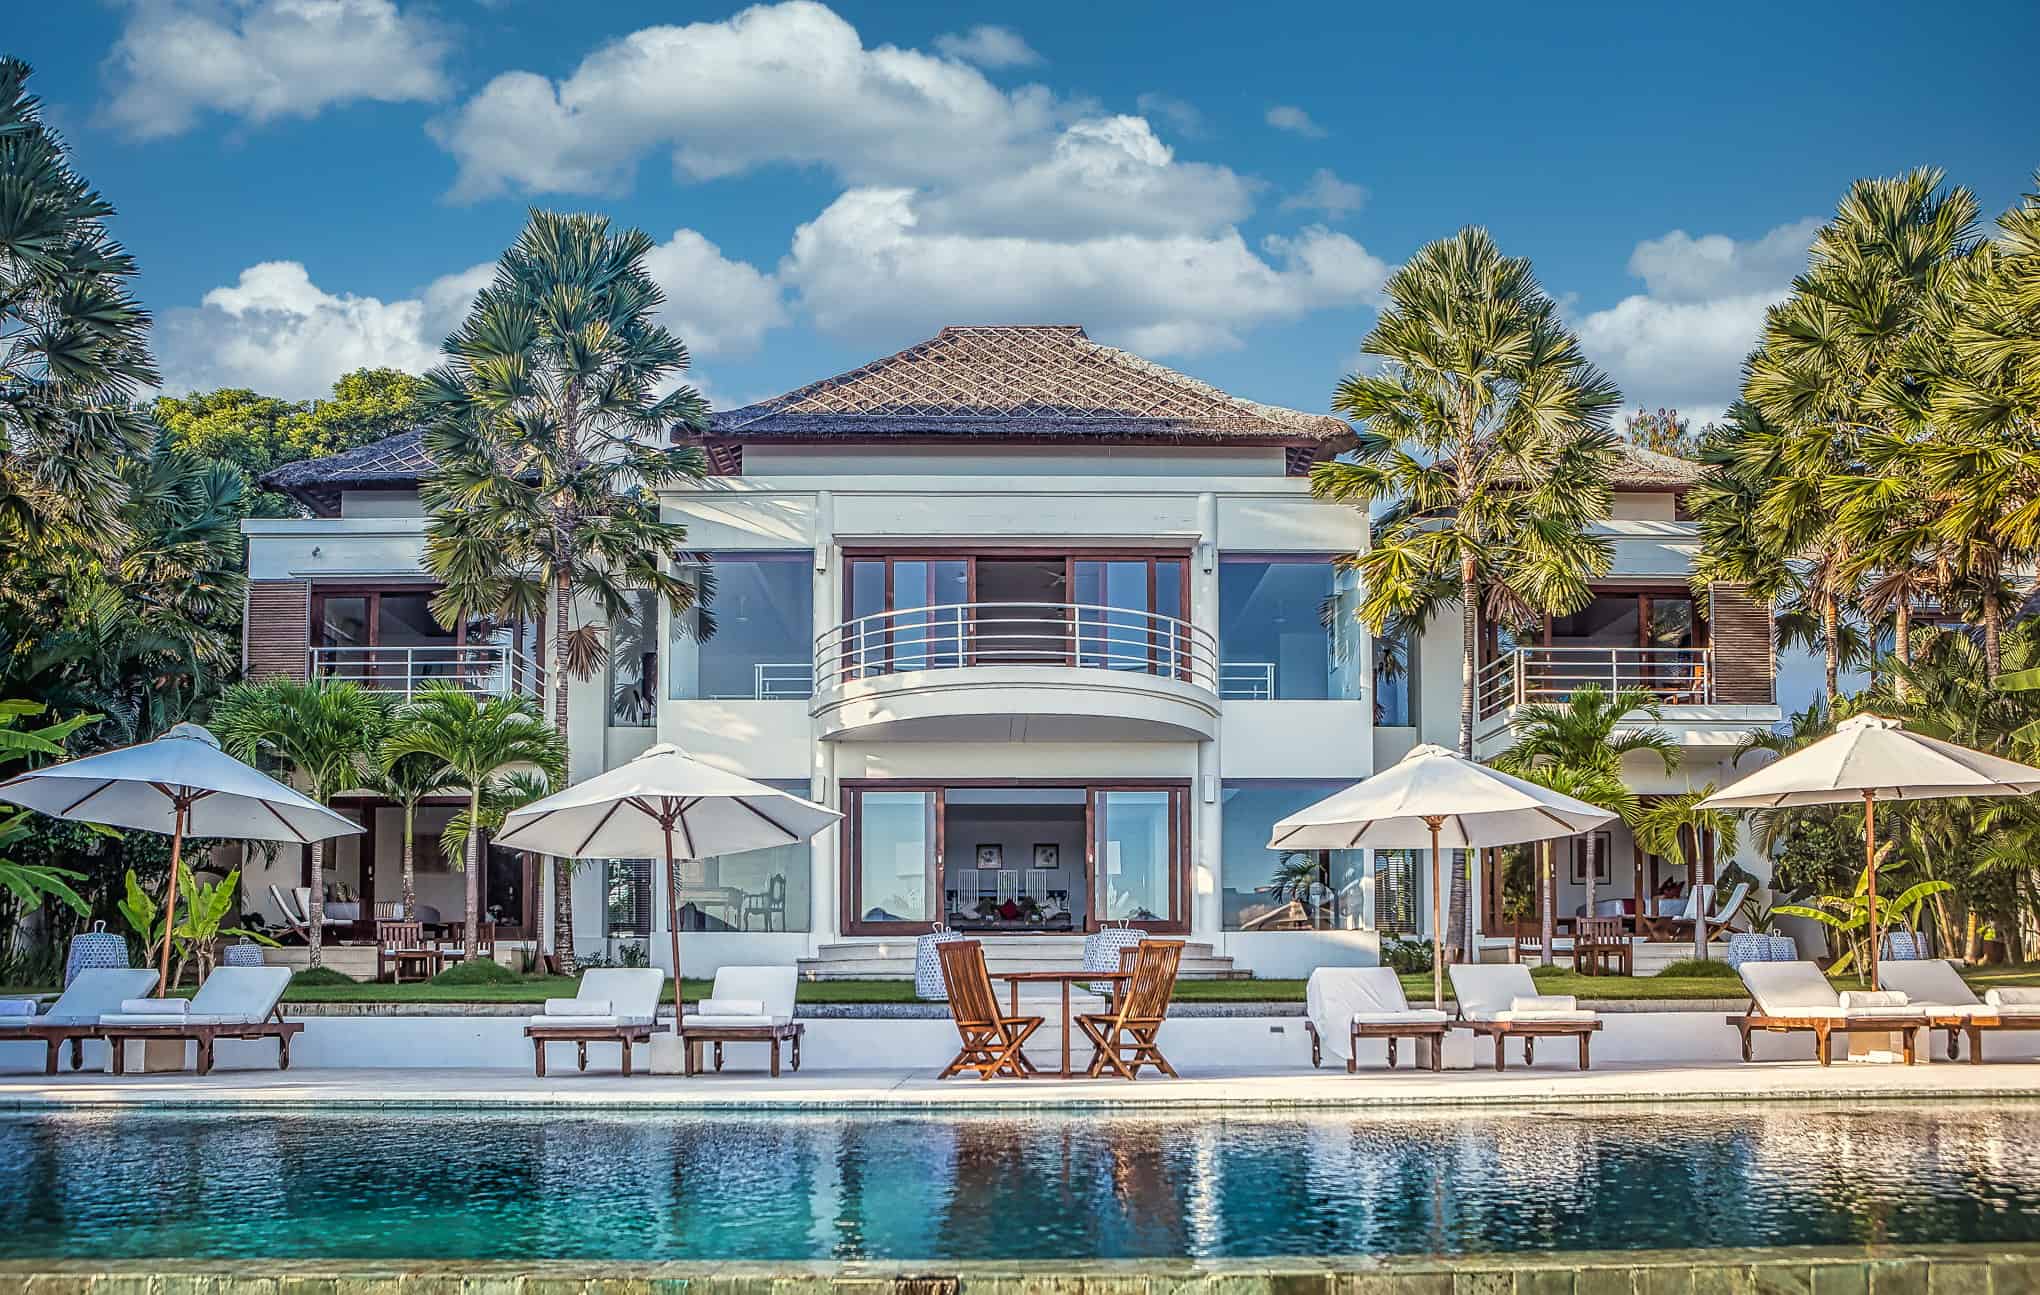 Villa-Lucia-Bali-Vacation-Homes-01-Edit-2